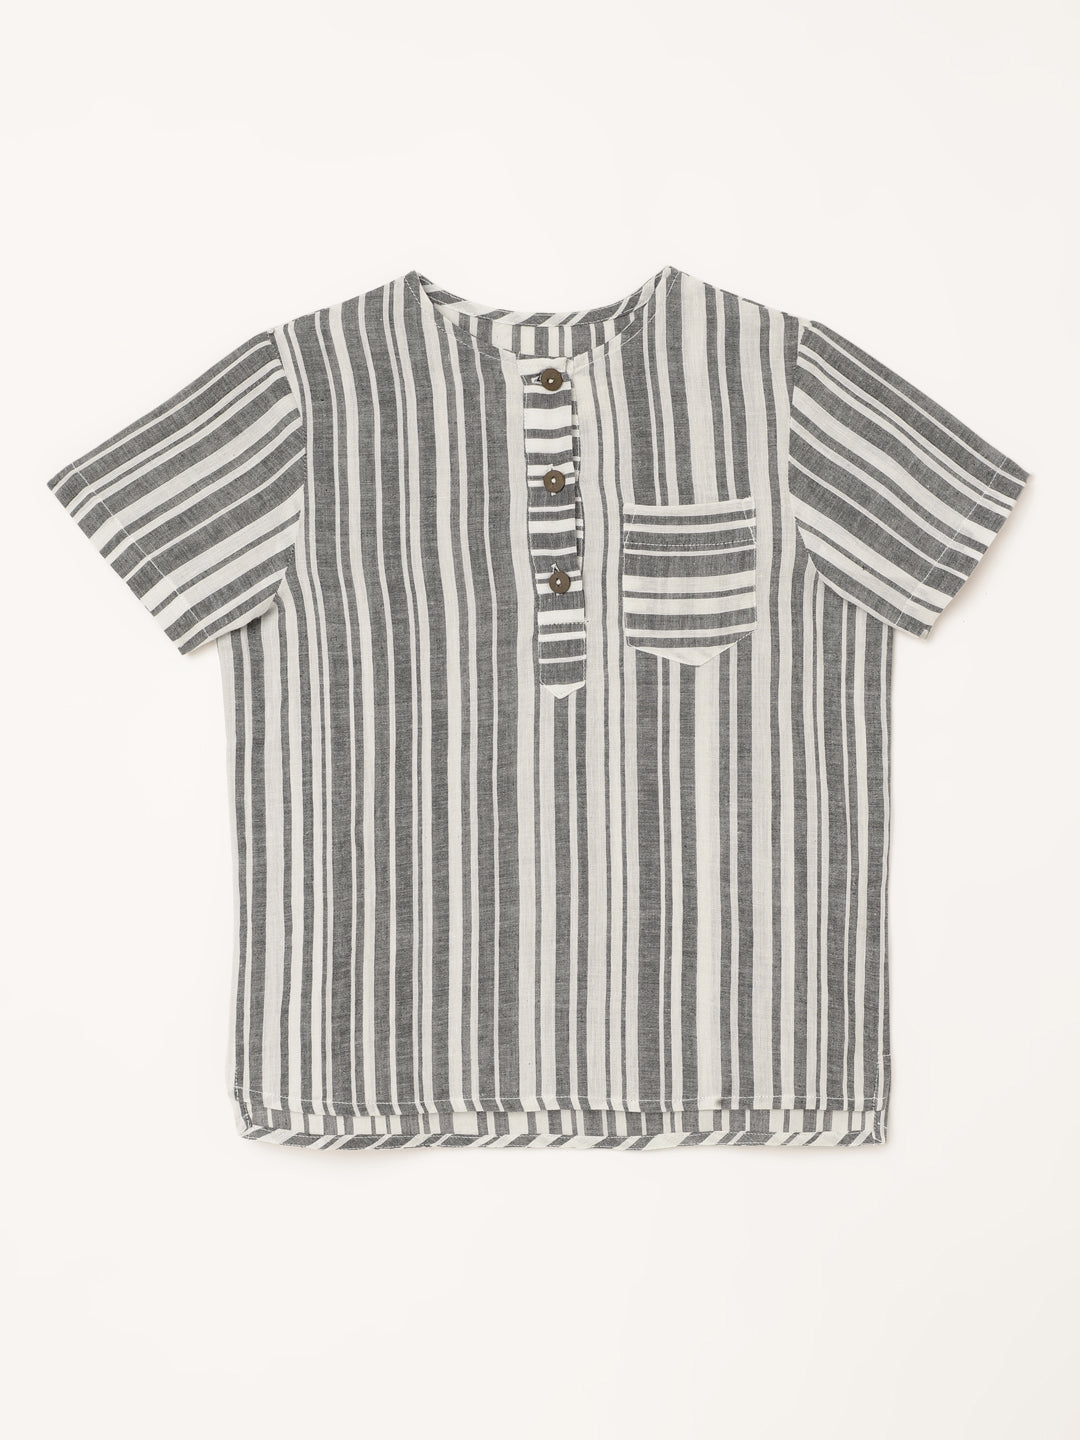 Boys Handloom Cotton Black Stripes Half Sleeves Shirt 1 yr to 8 yrs - Front